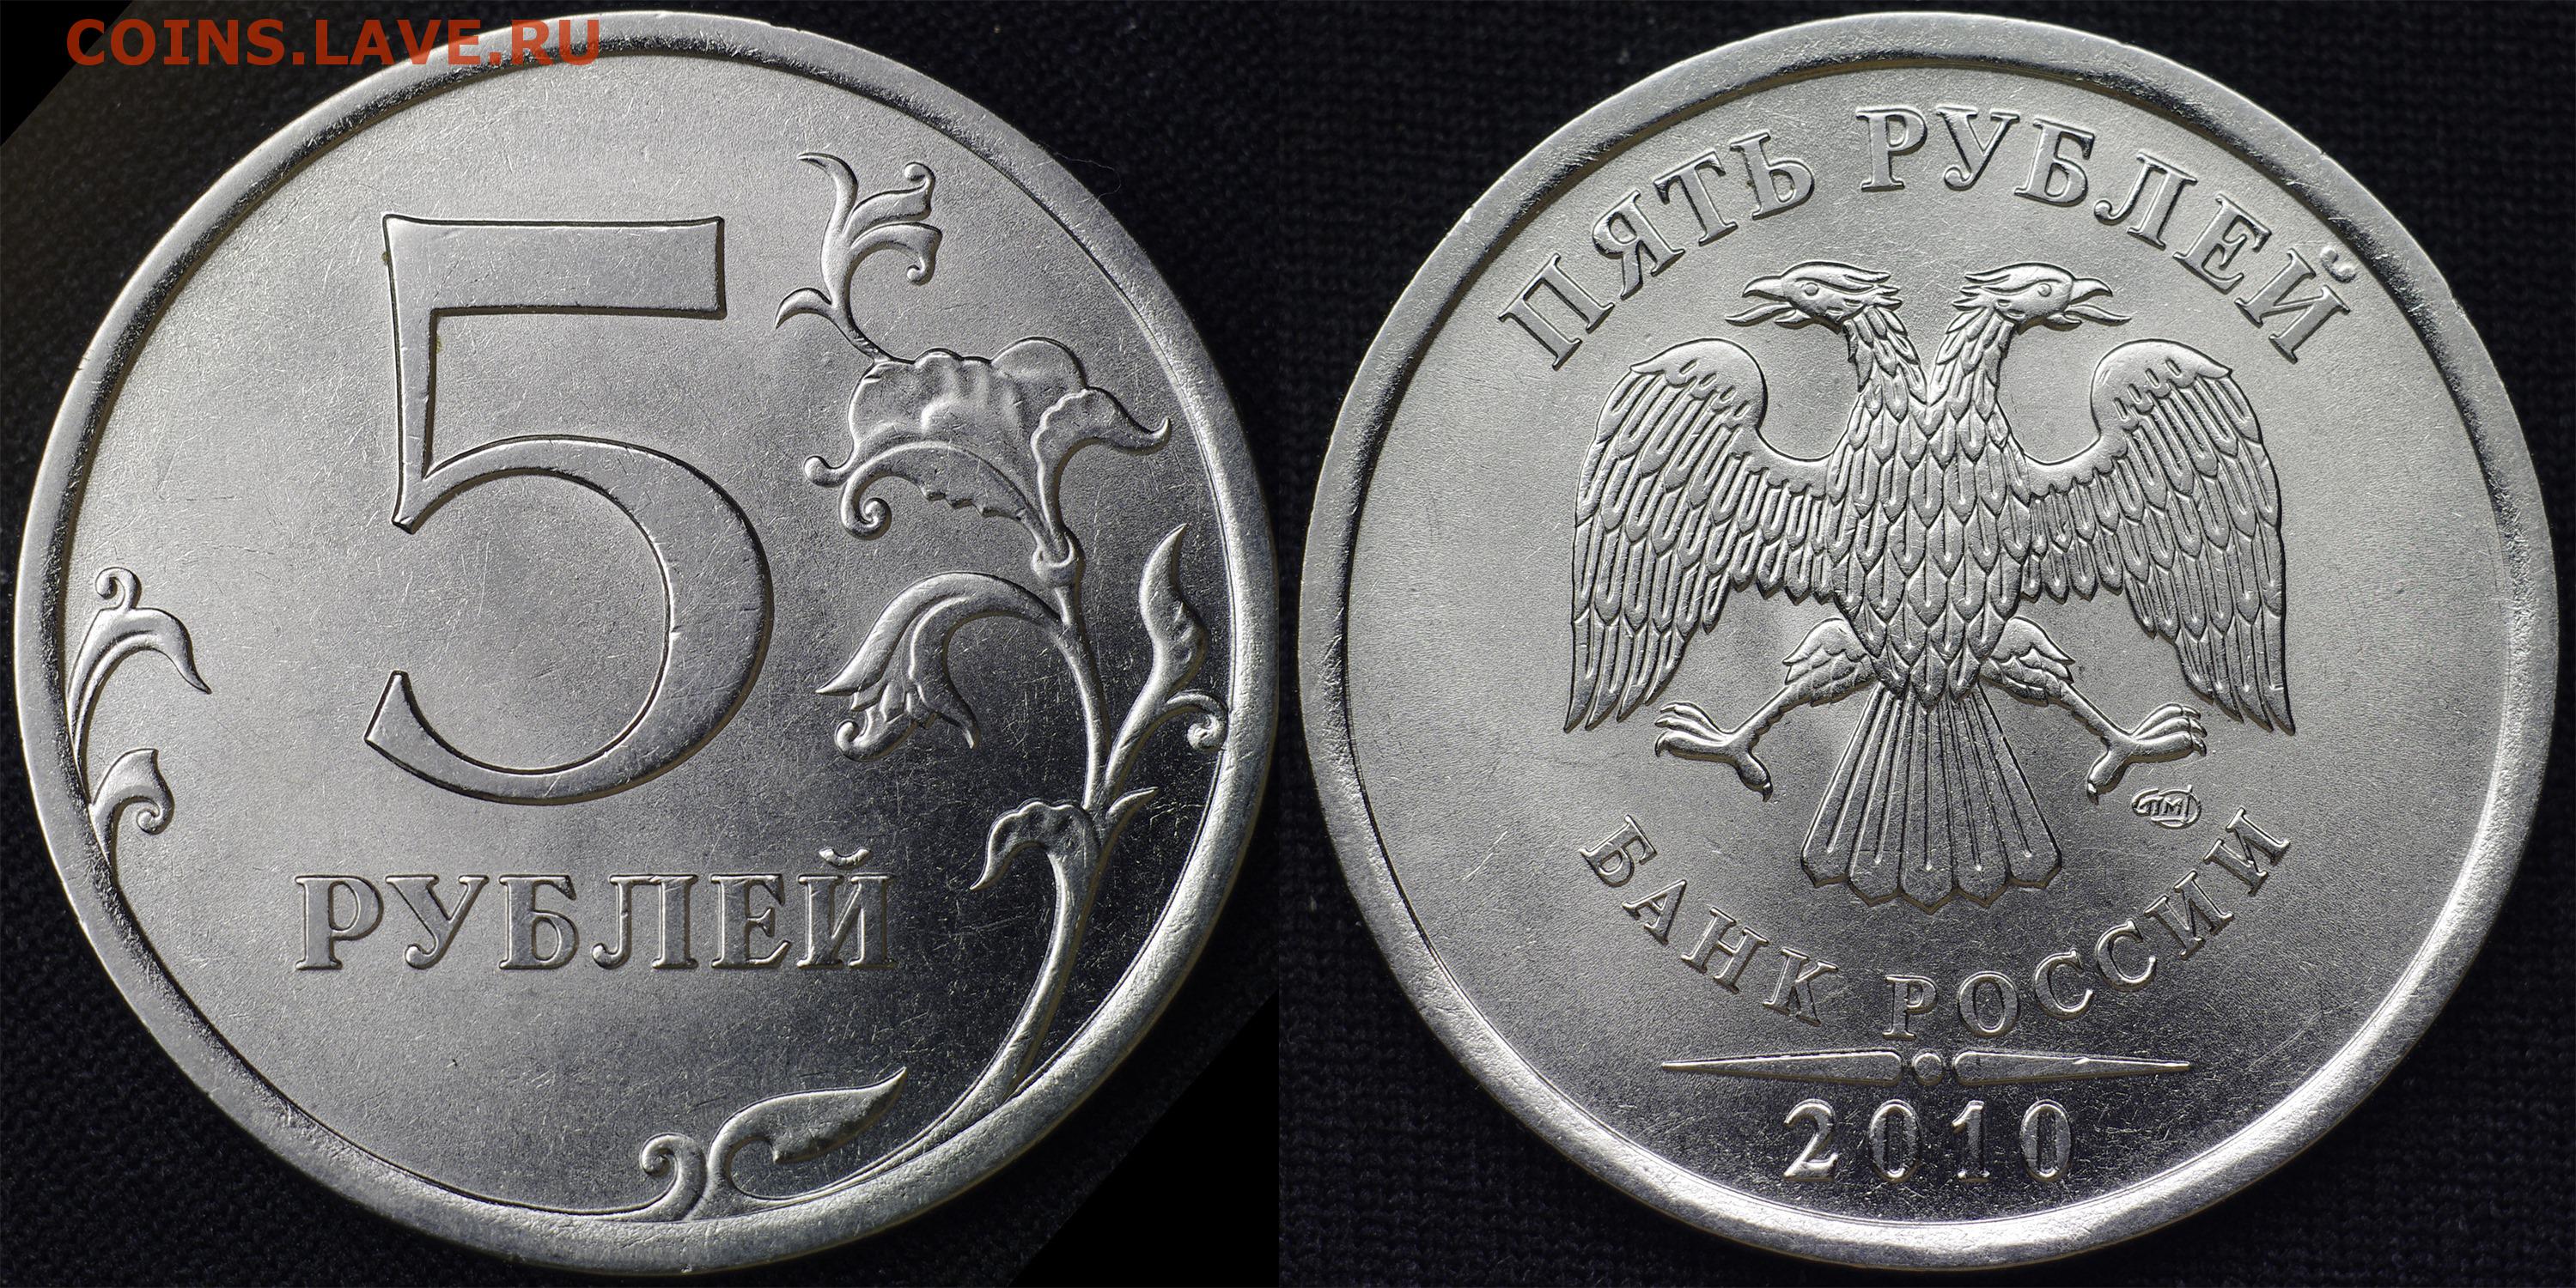 5 рублей 2010 цена. 5 Рублей 2010 СПМД. Монета 5 рублей 2010. 5 Рублевая монета 2010 года. Редкая монета 5 рублей 2010 года.